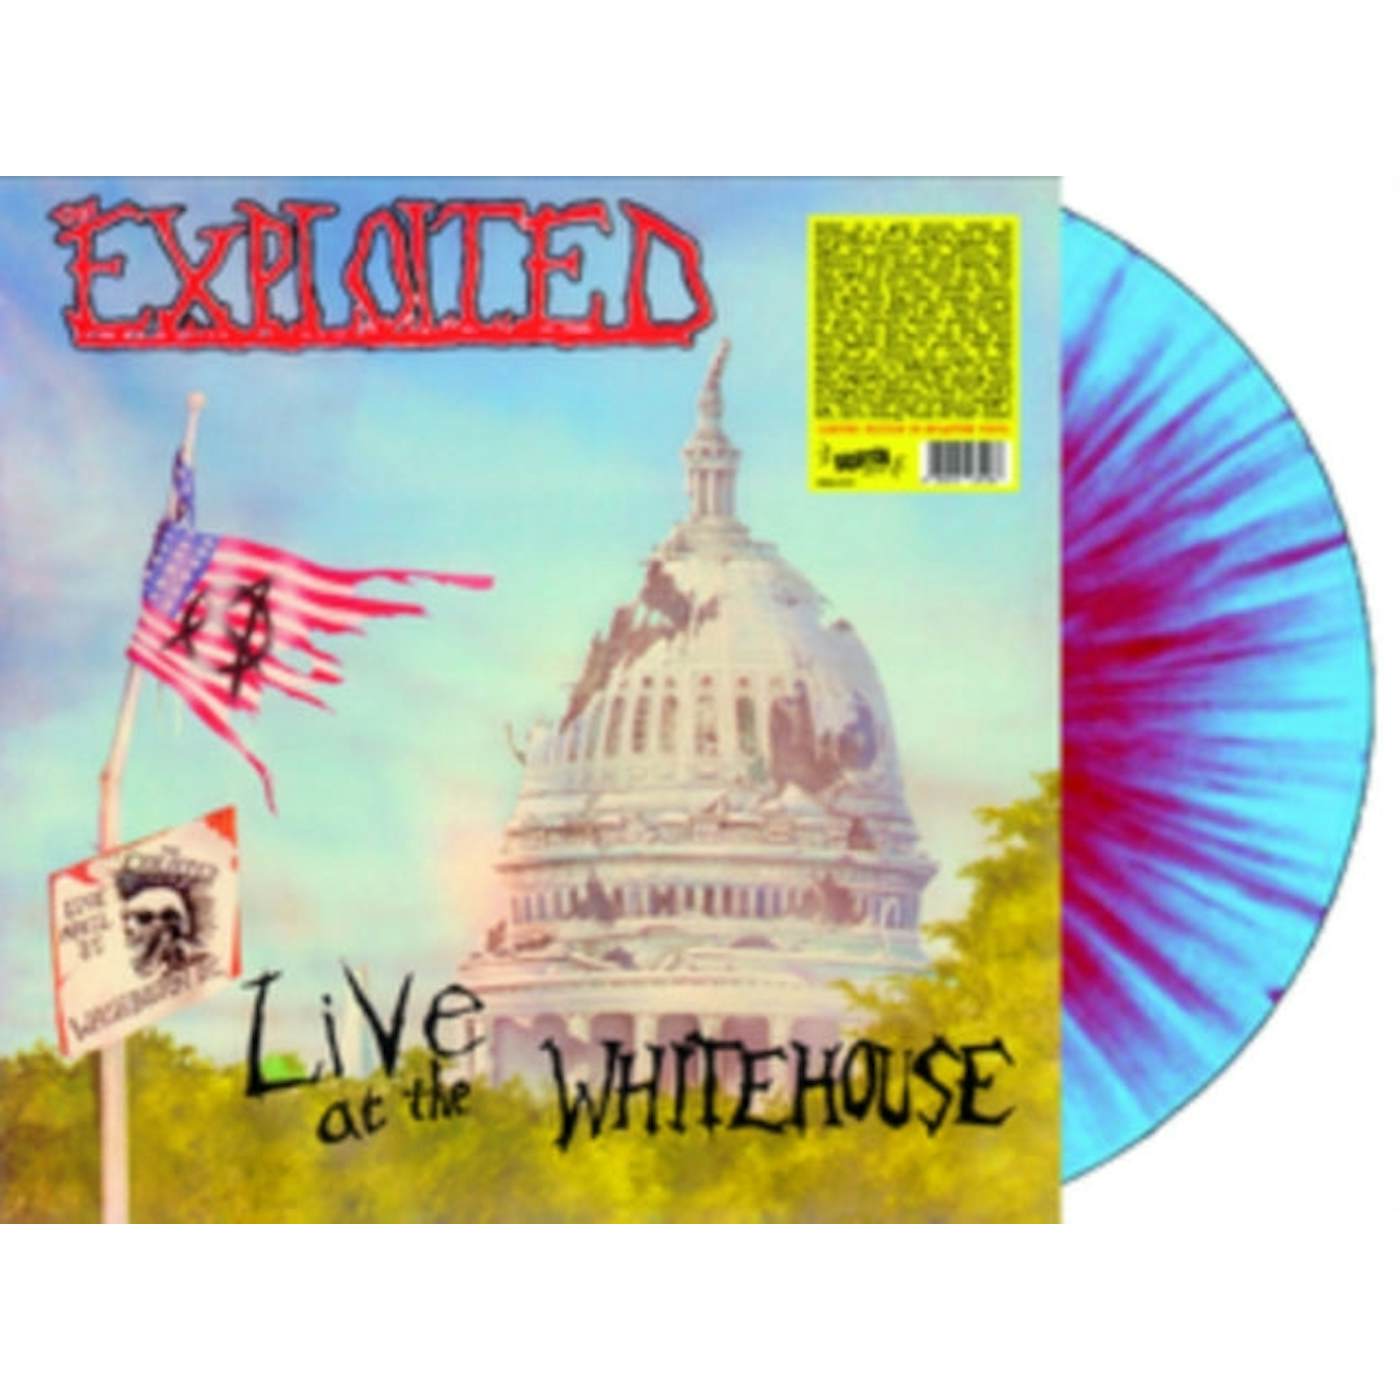 The Exploited LP - Live At The Whitehouse (Splatter Vinyl)